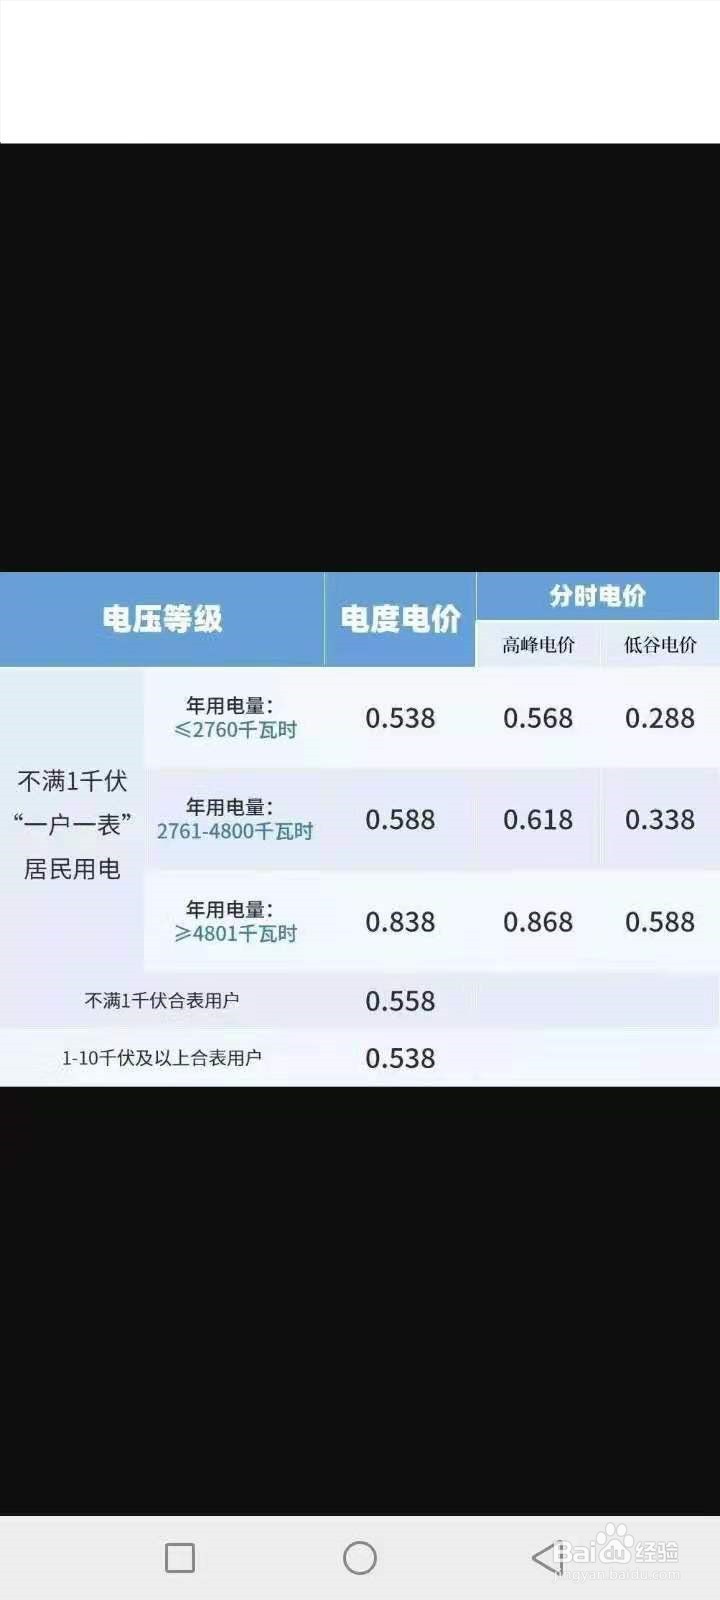 显示杭州阶梯电价表